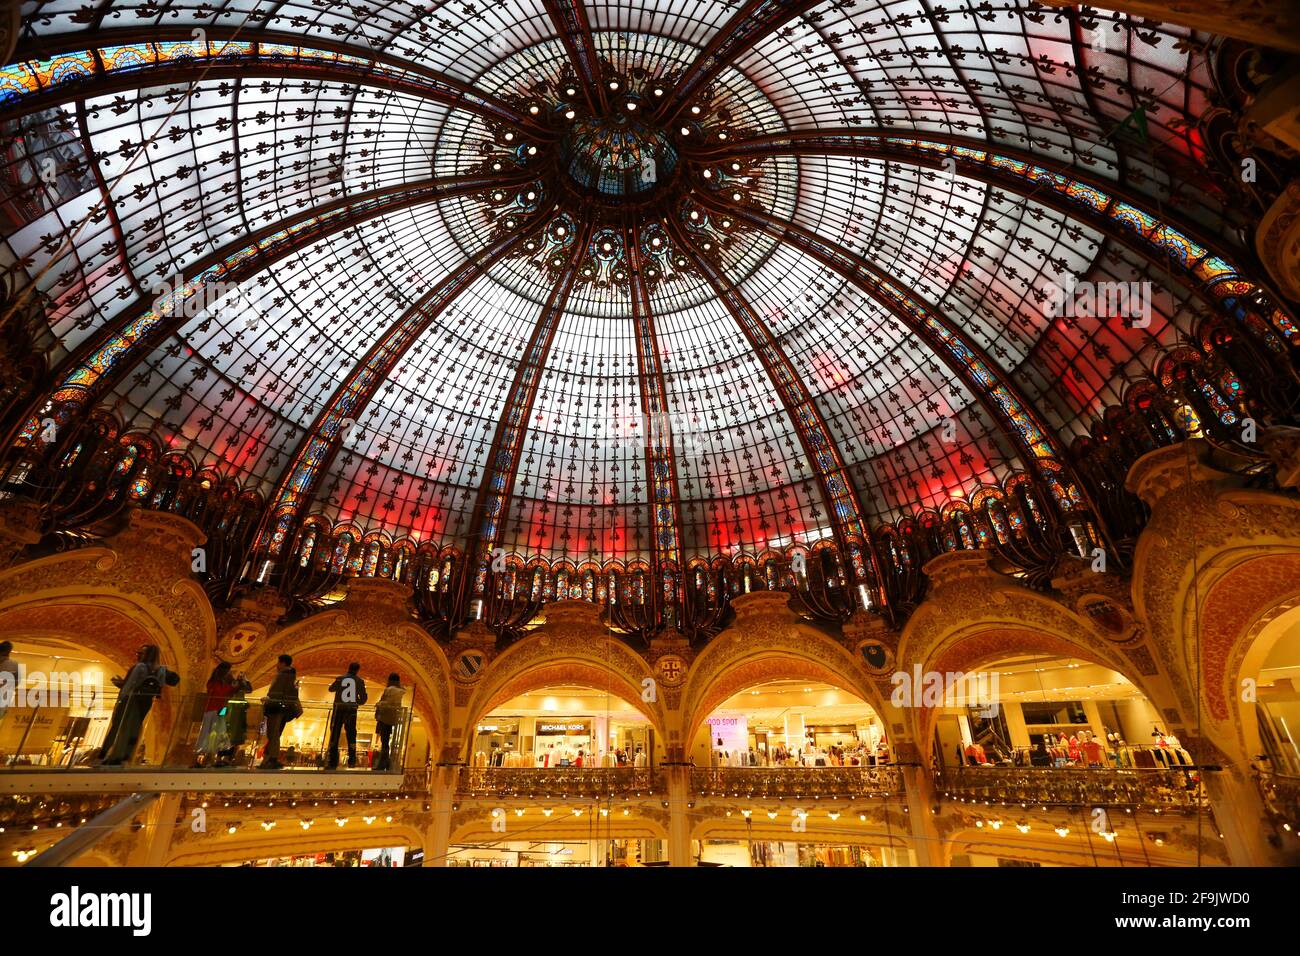 Dachkonstruktion der Galerie Lafayette eine der bekanntesten traditionsreichsten französischen Warenhausketten. Stock Photo